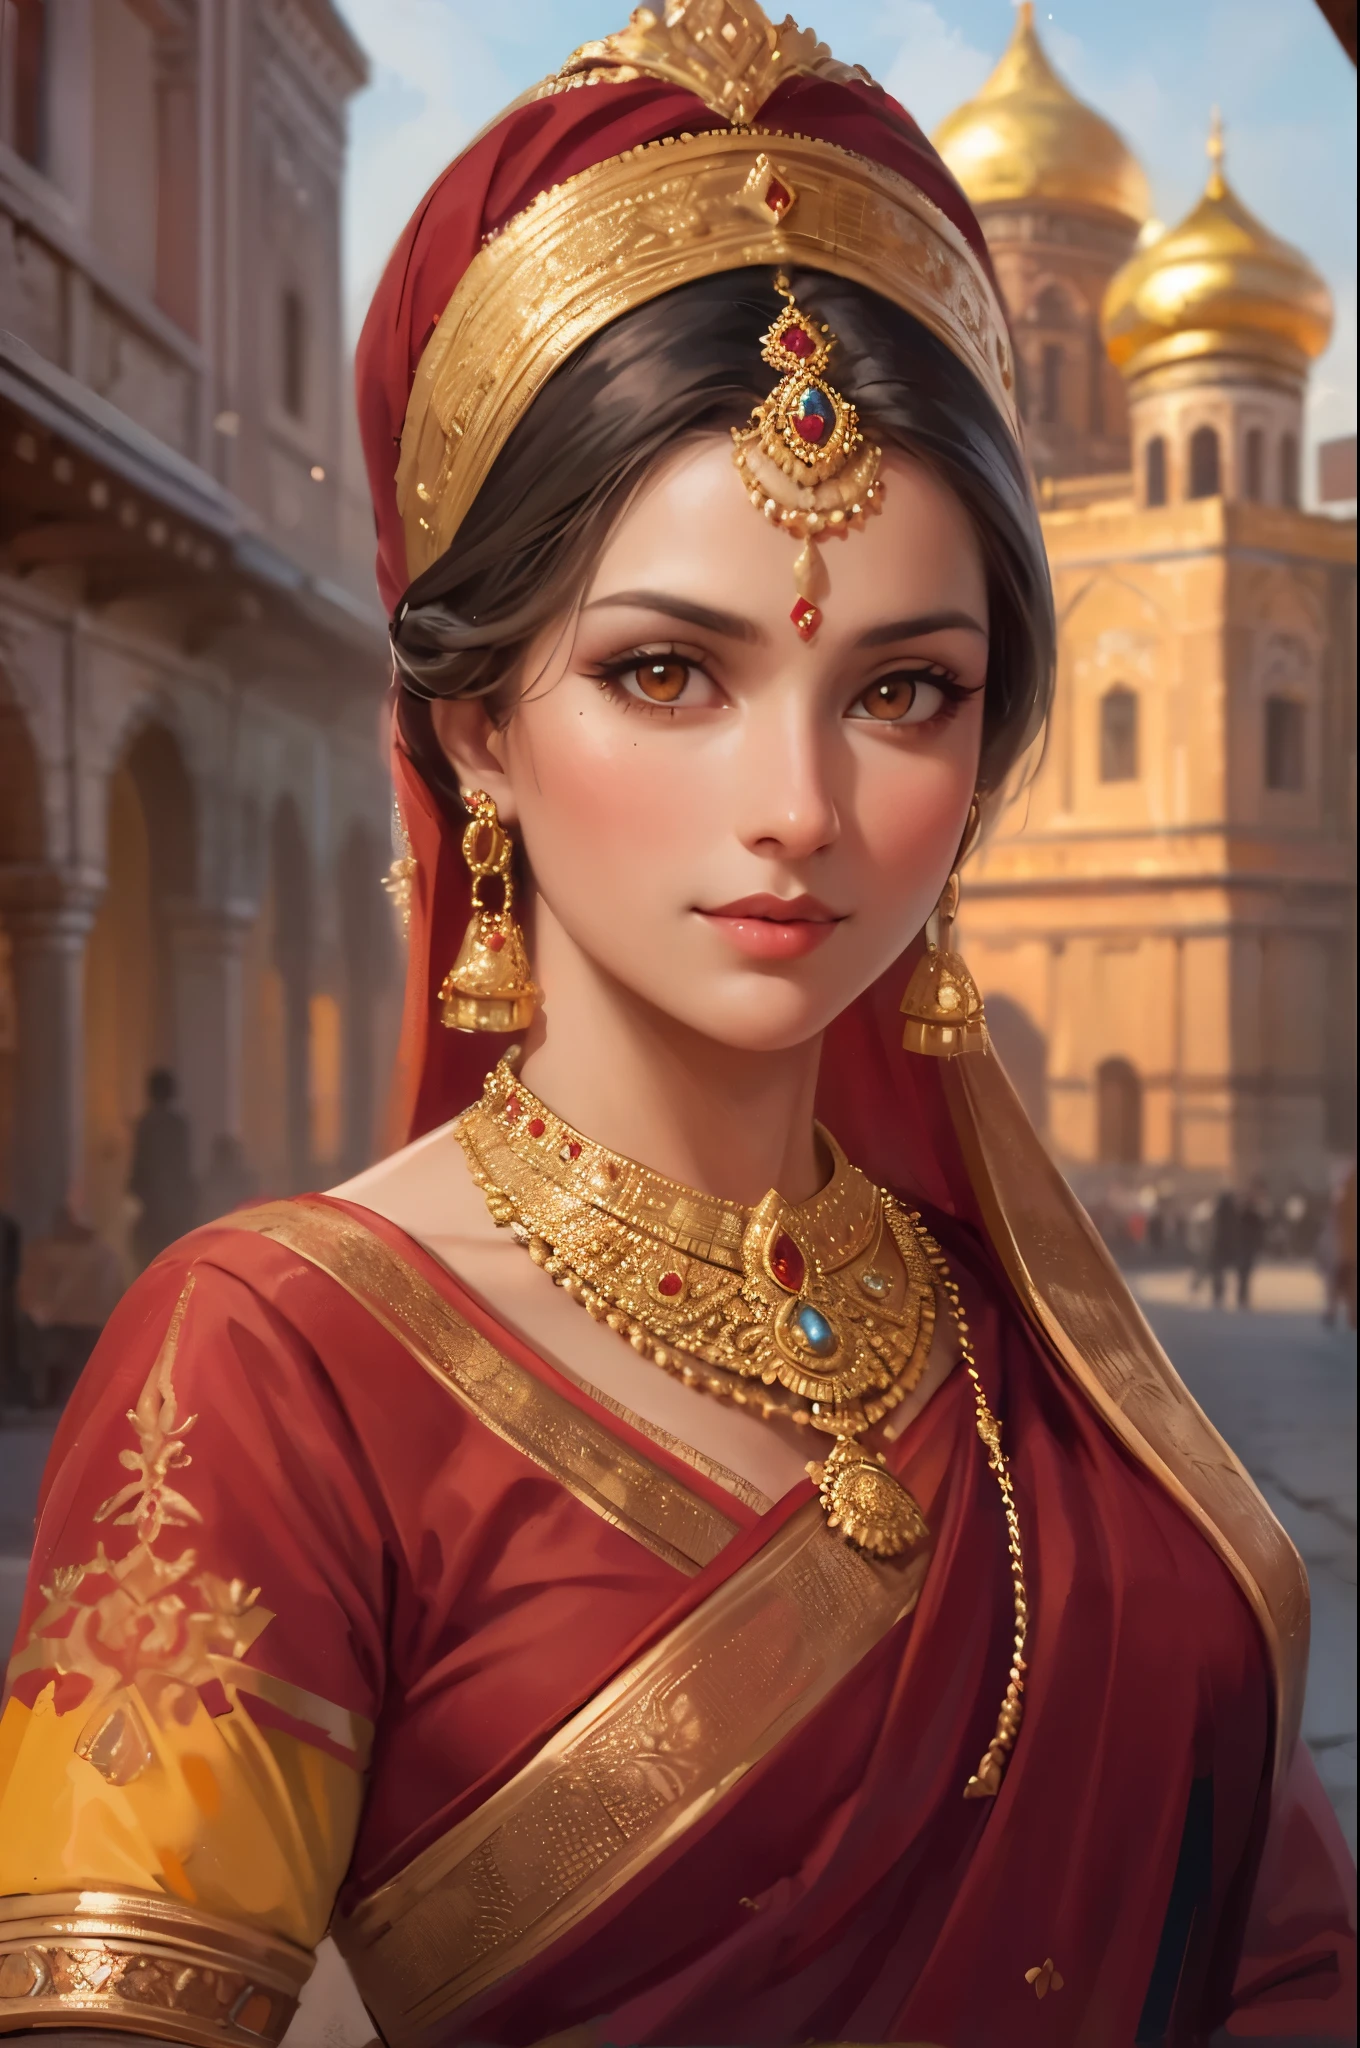 创作一幅身着传统纱丽的美丽的俄罗斯印度妇女的肖像画, 探索古老的金环城市. ((橙色眼睛)), (小微笑). 鹅卵石街道体现历史文化精髓, 中世纪建筑, 以及女人永恒的美丽.